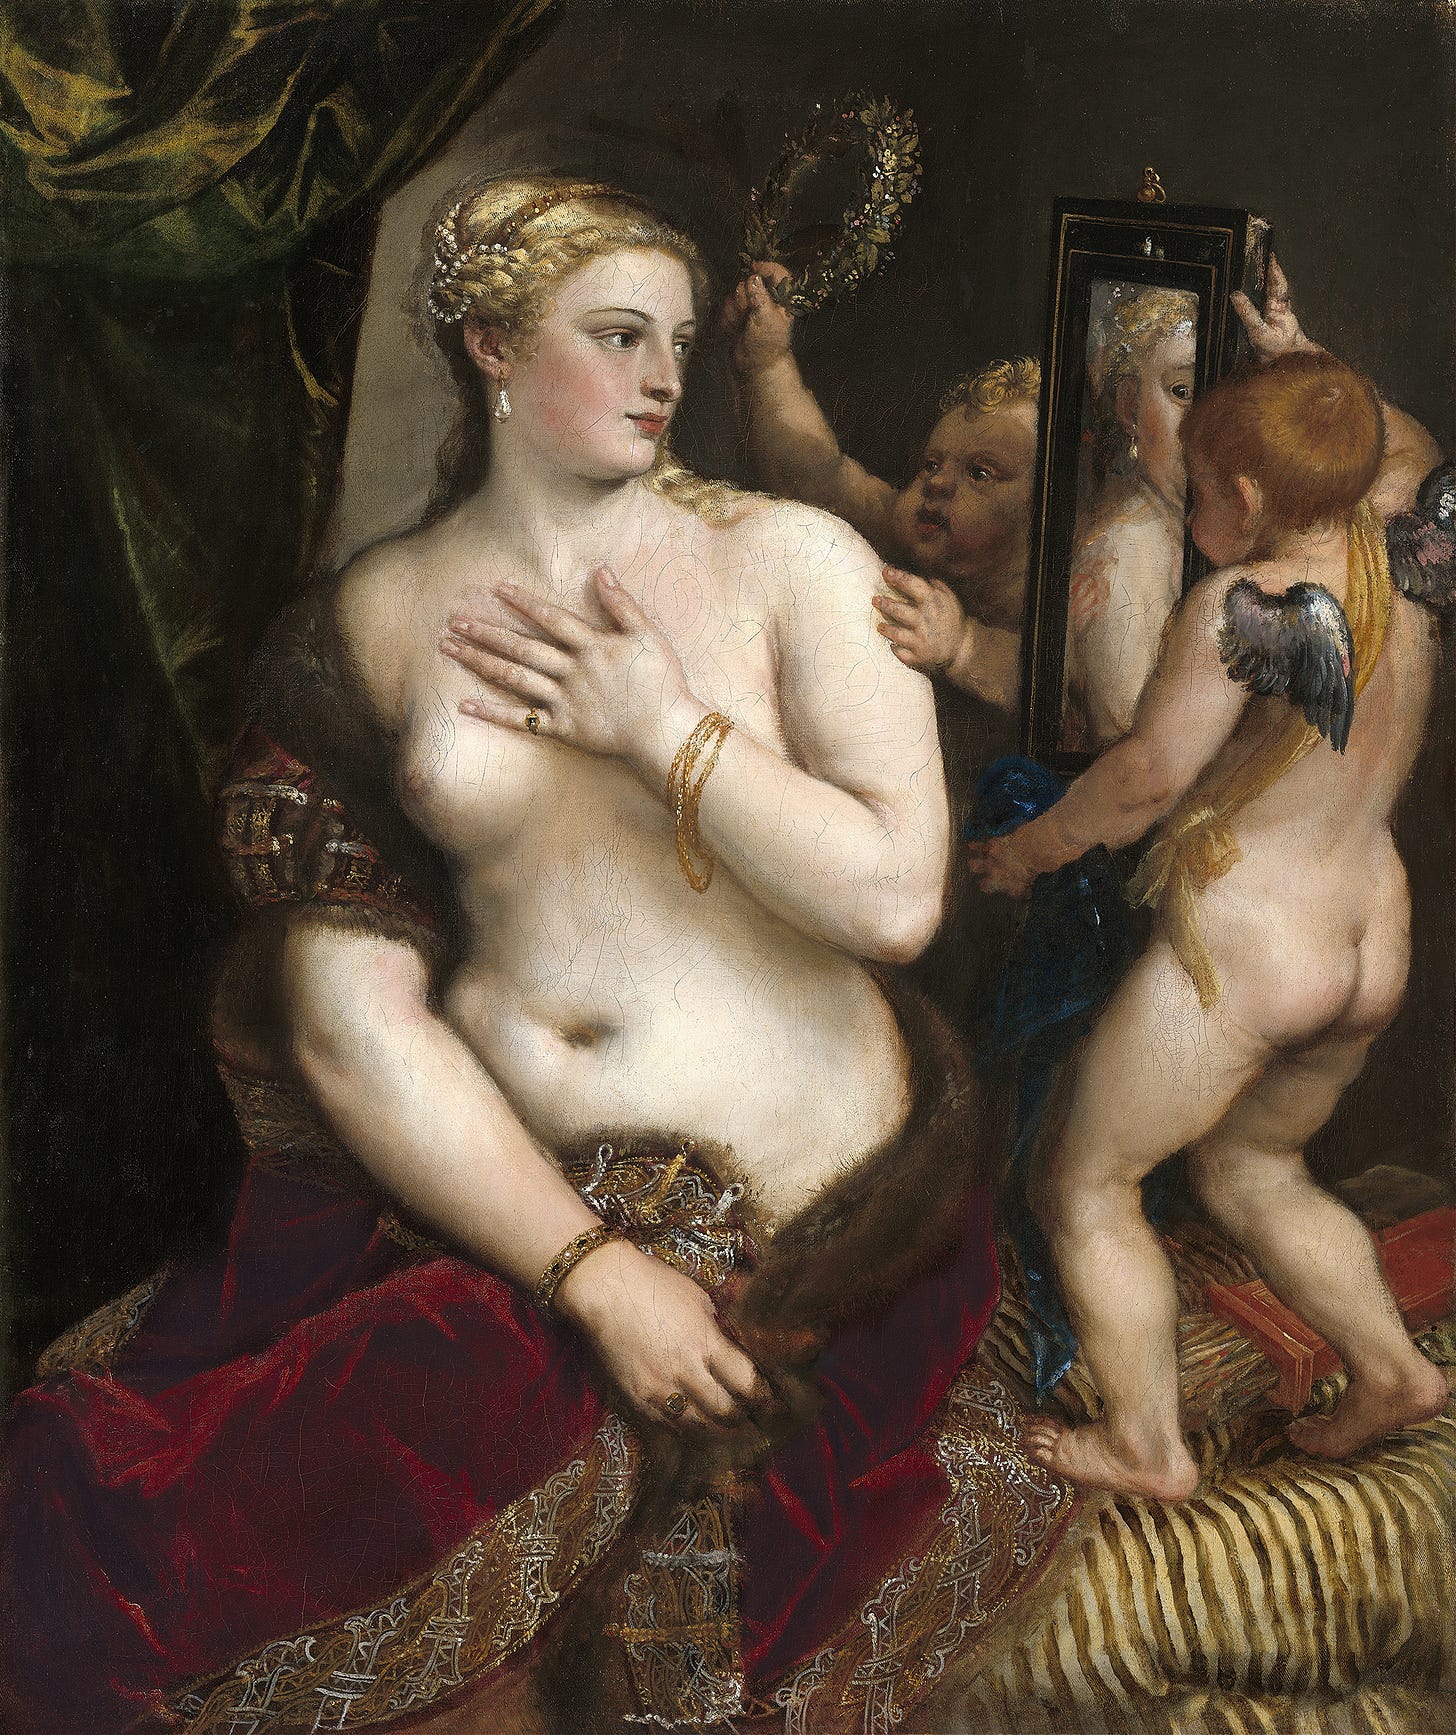 Venus With a Mirror (C. 1555)